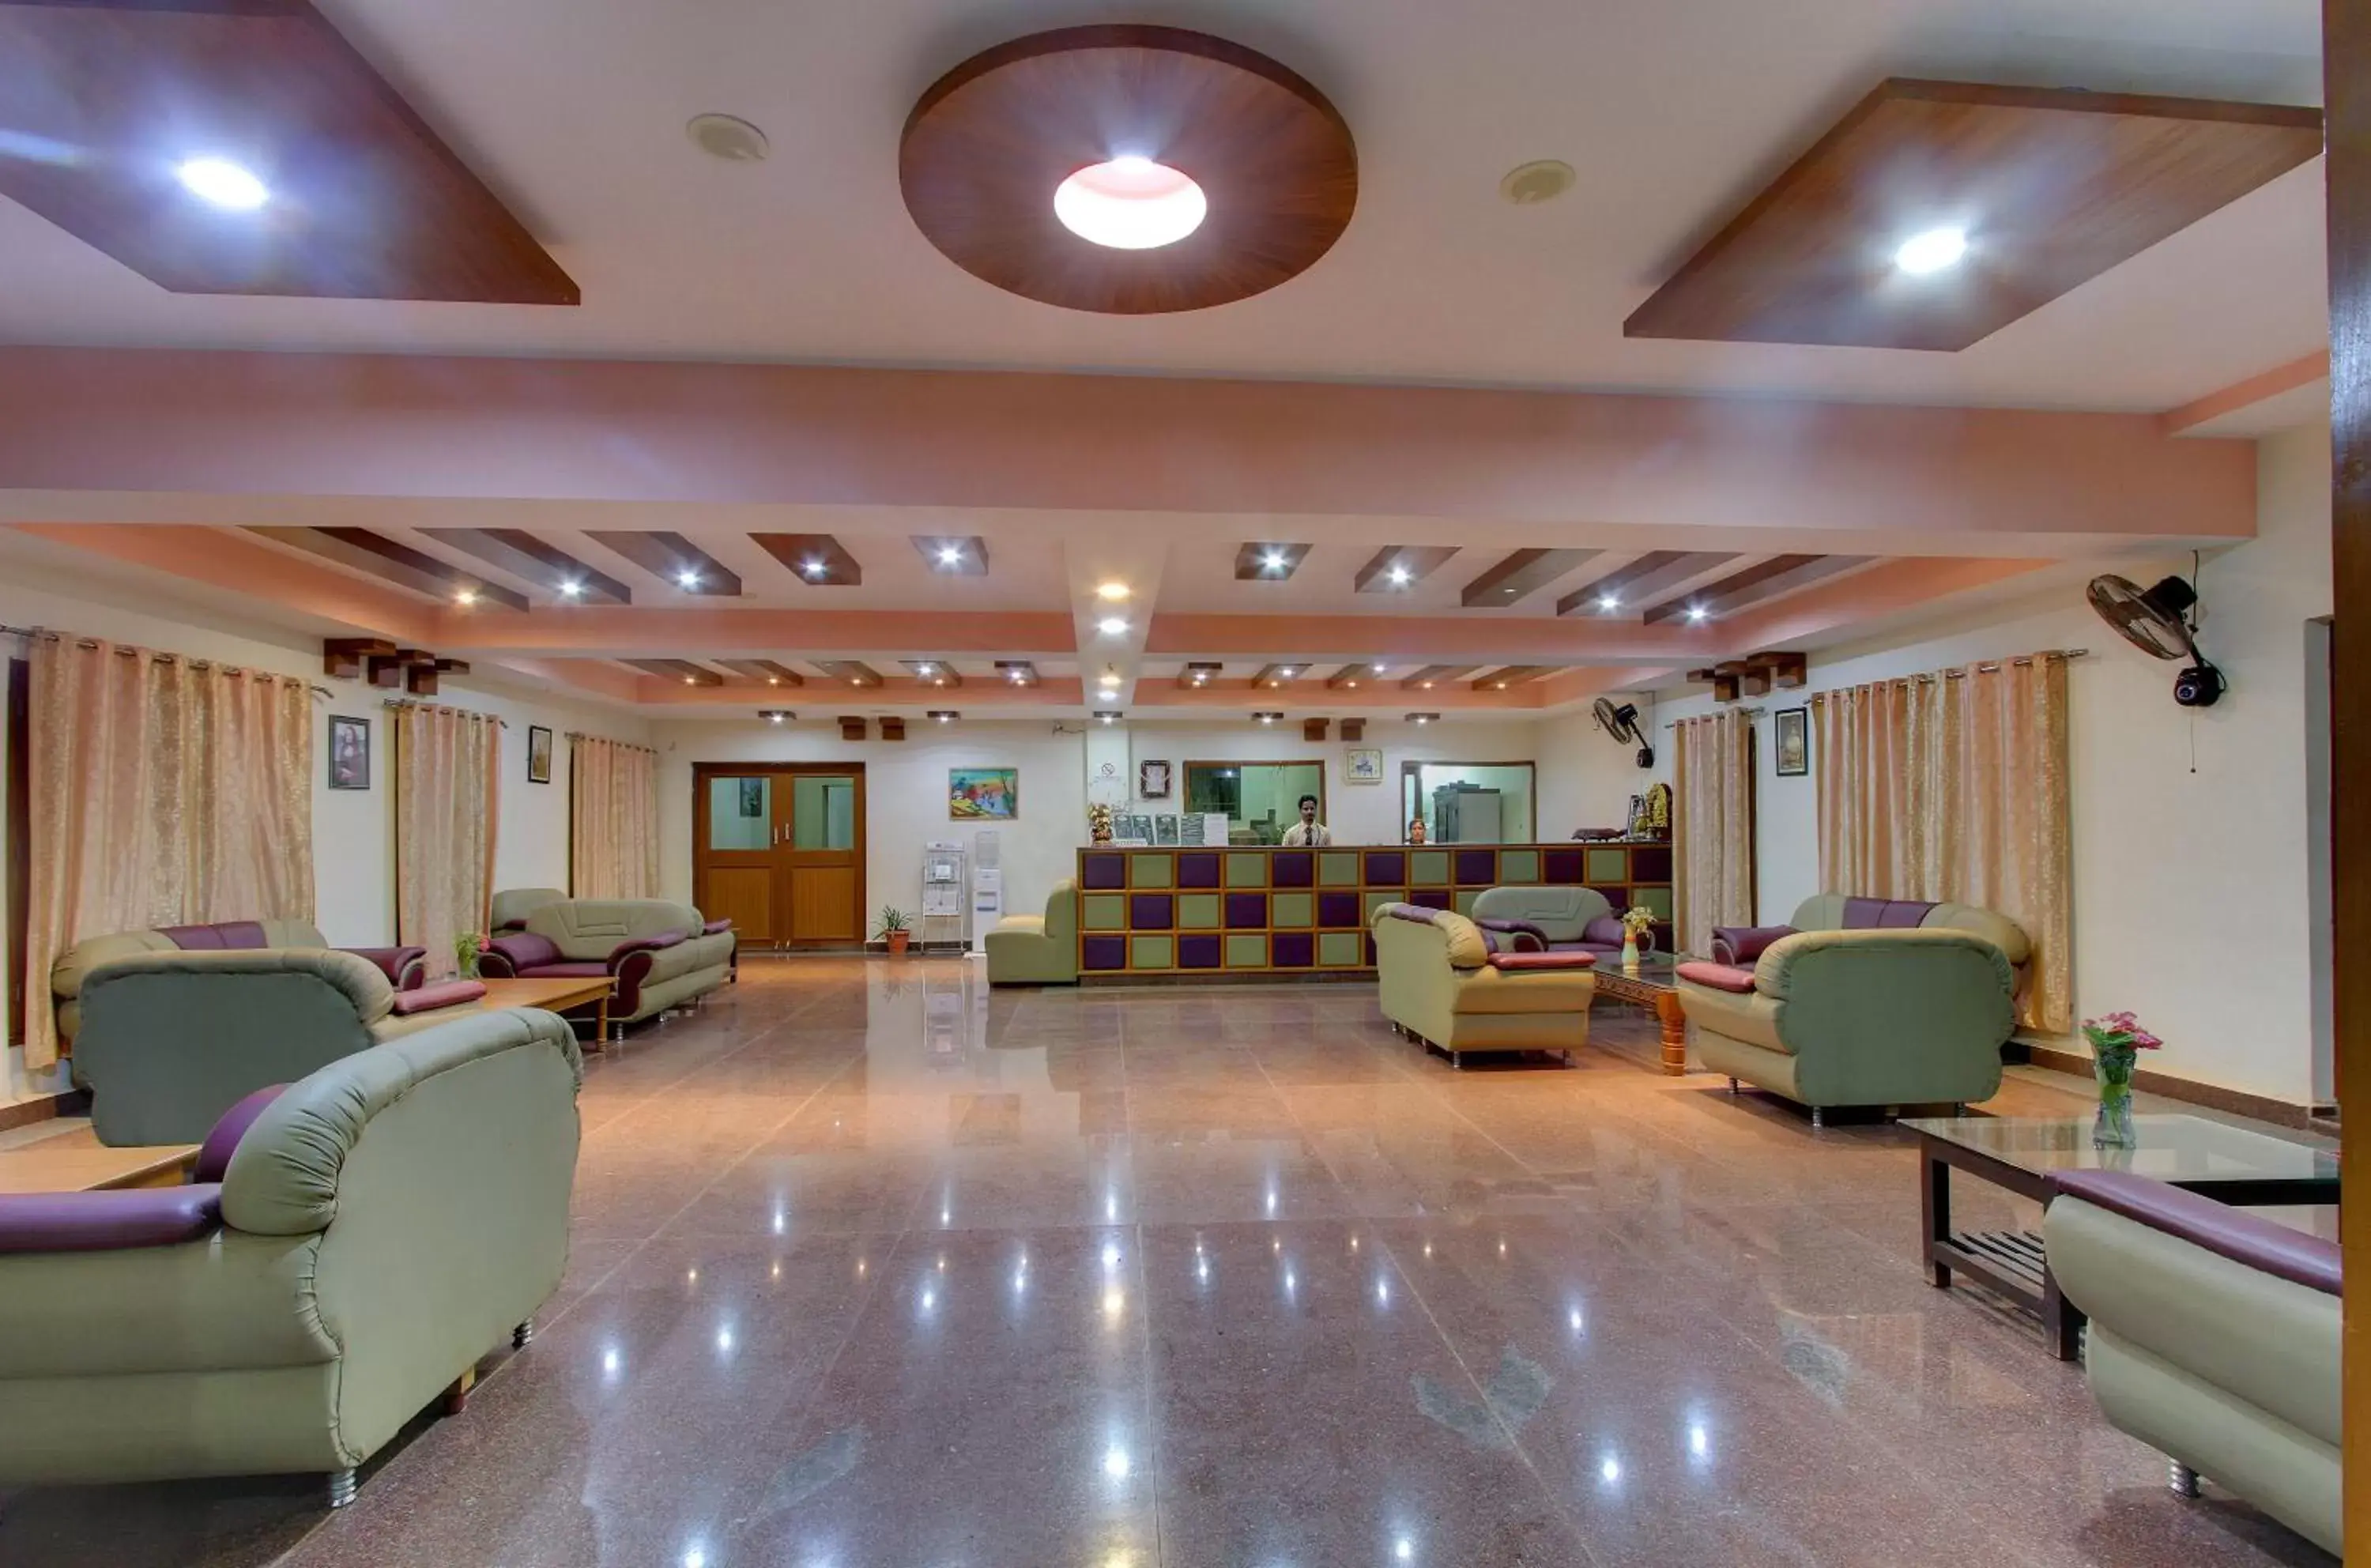 Lobby or reception in Kanthi Resorts Badami